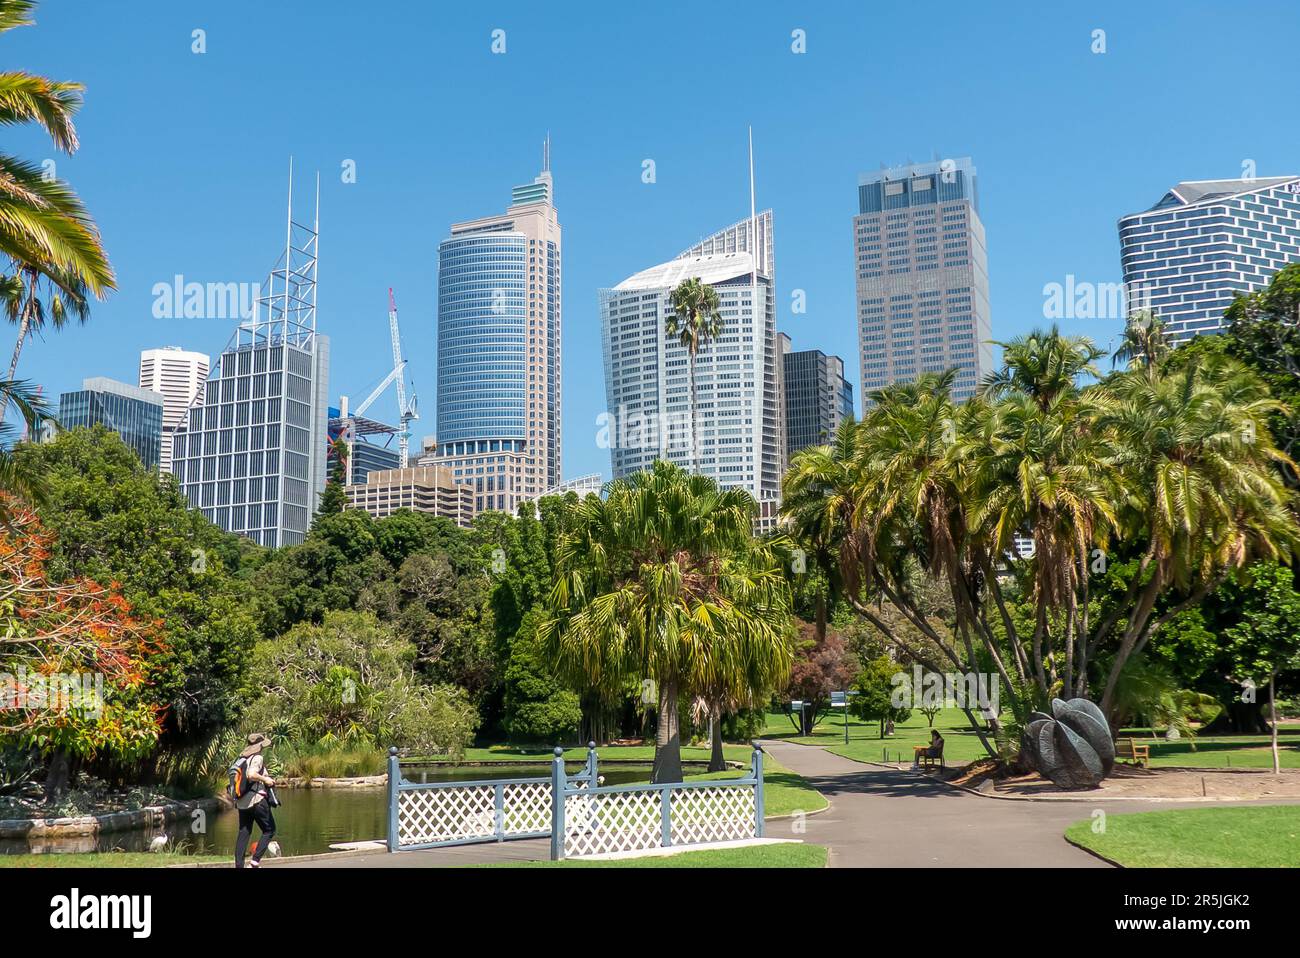 Les gratte-ciel de Sydney depuis les jardins botaniques Banque D'Images